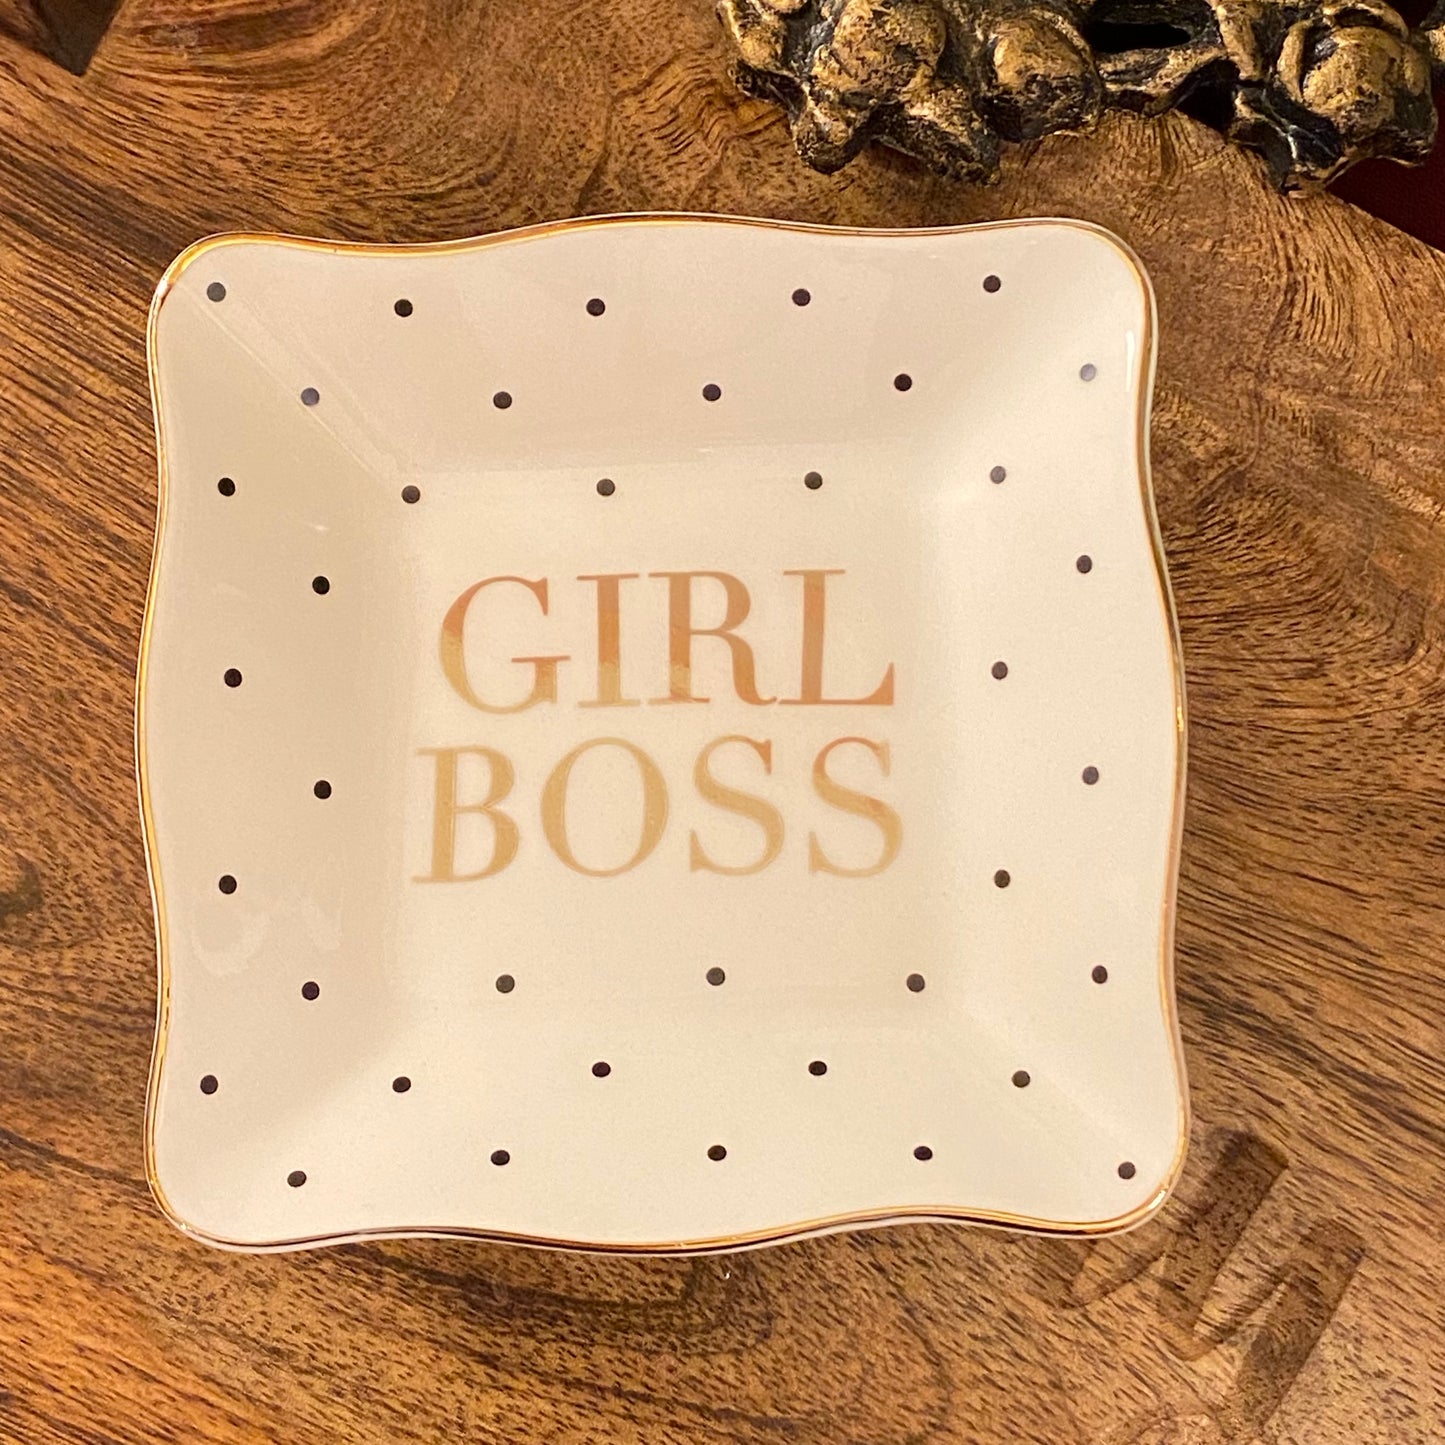 Mary Square Ceramic “Girl Boss” Trinket Tray